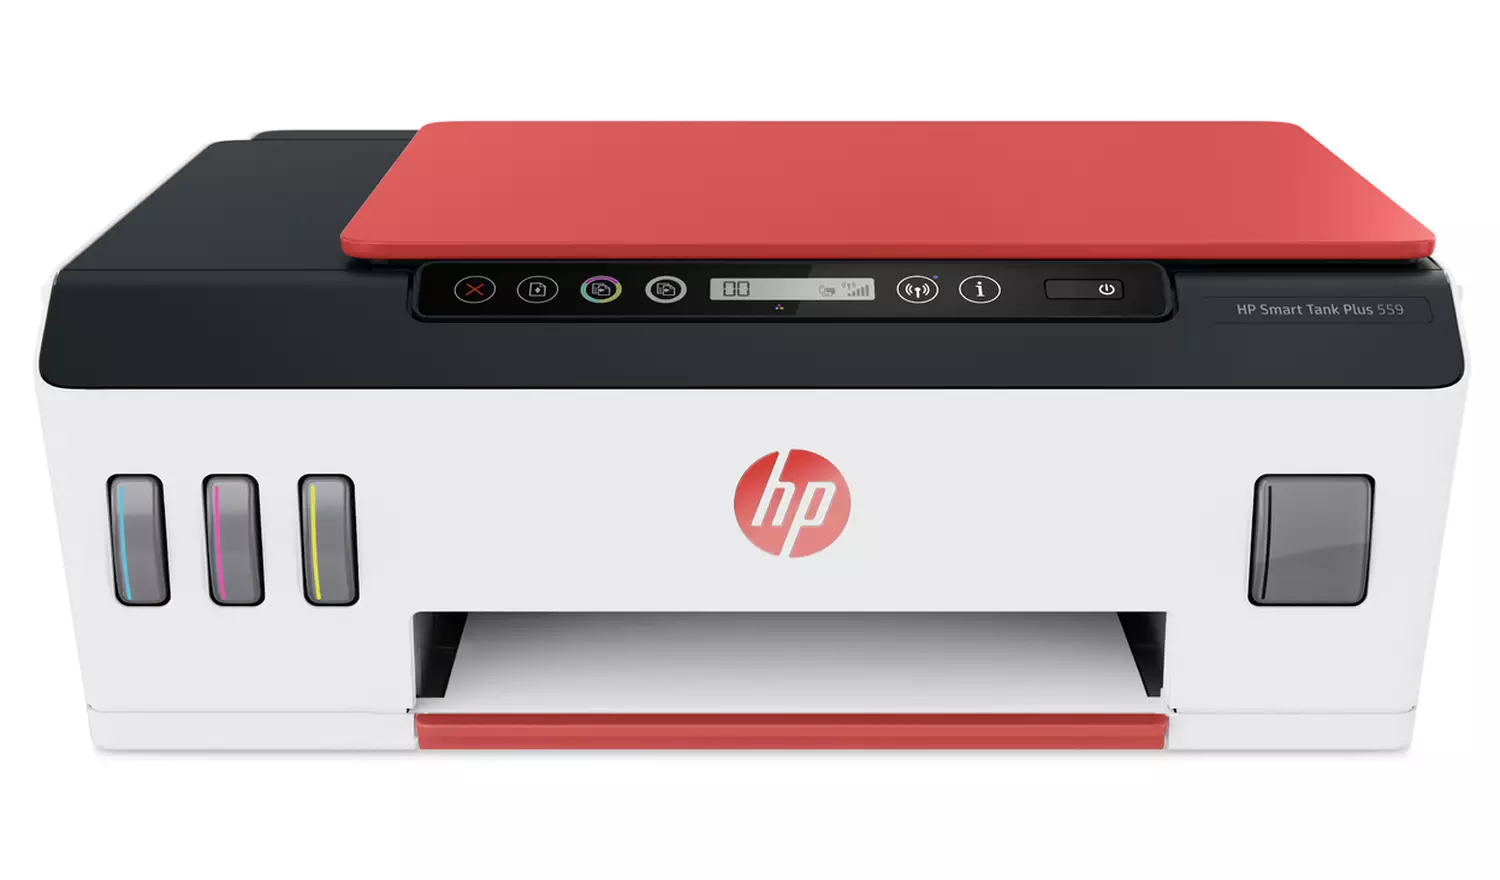 Multifunkční Inkoustová tiskárna HP smart tank plus 559 / 1200 x 1200 DPI / bílá / POŠKOZENÝ OBAL